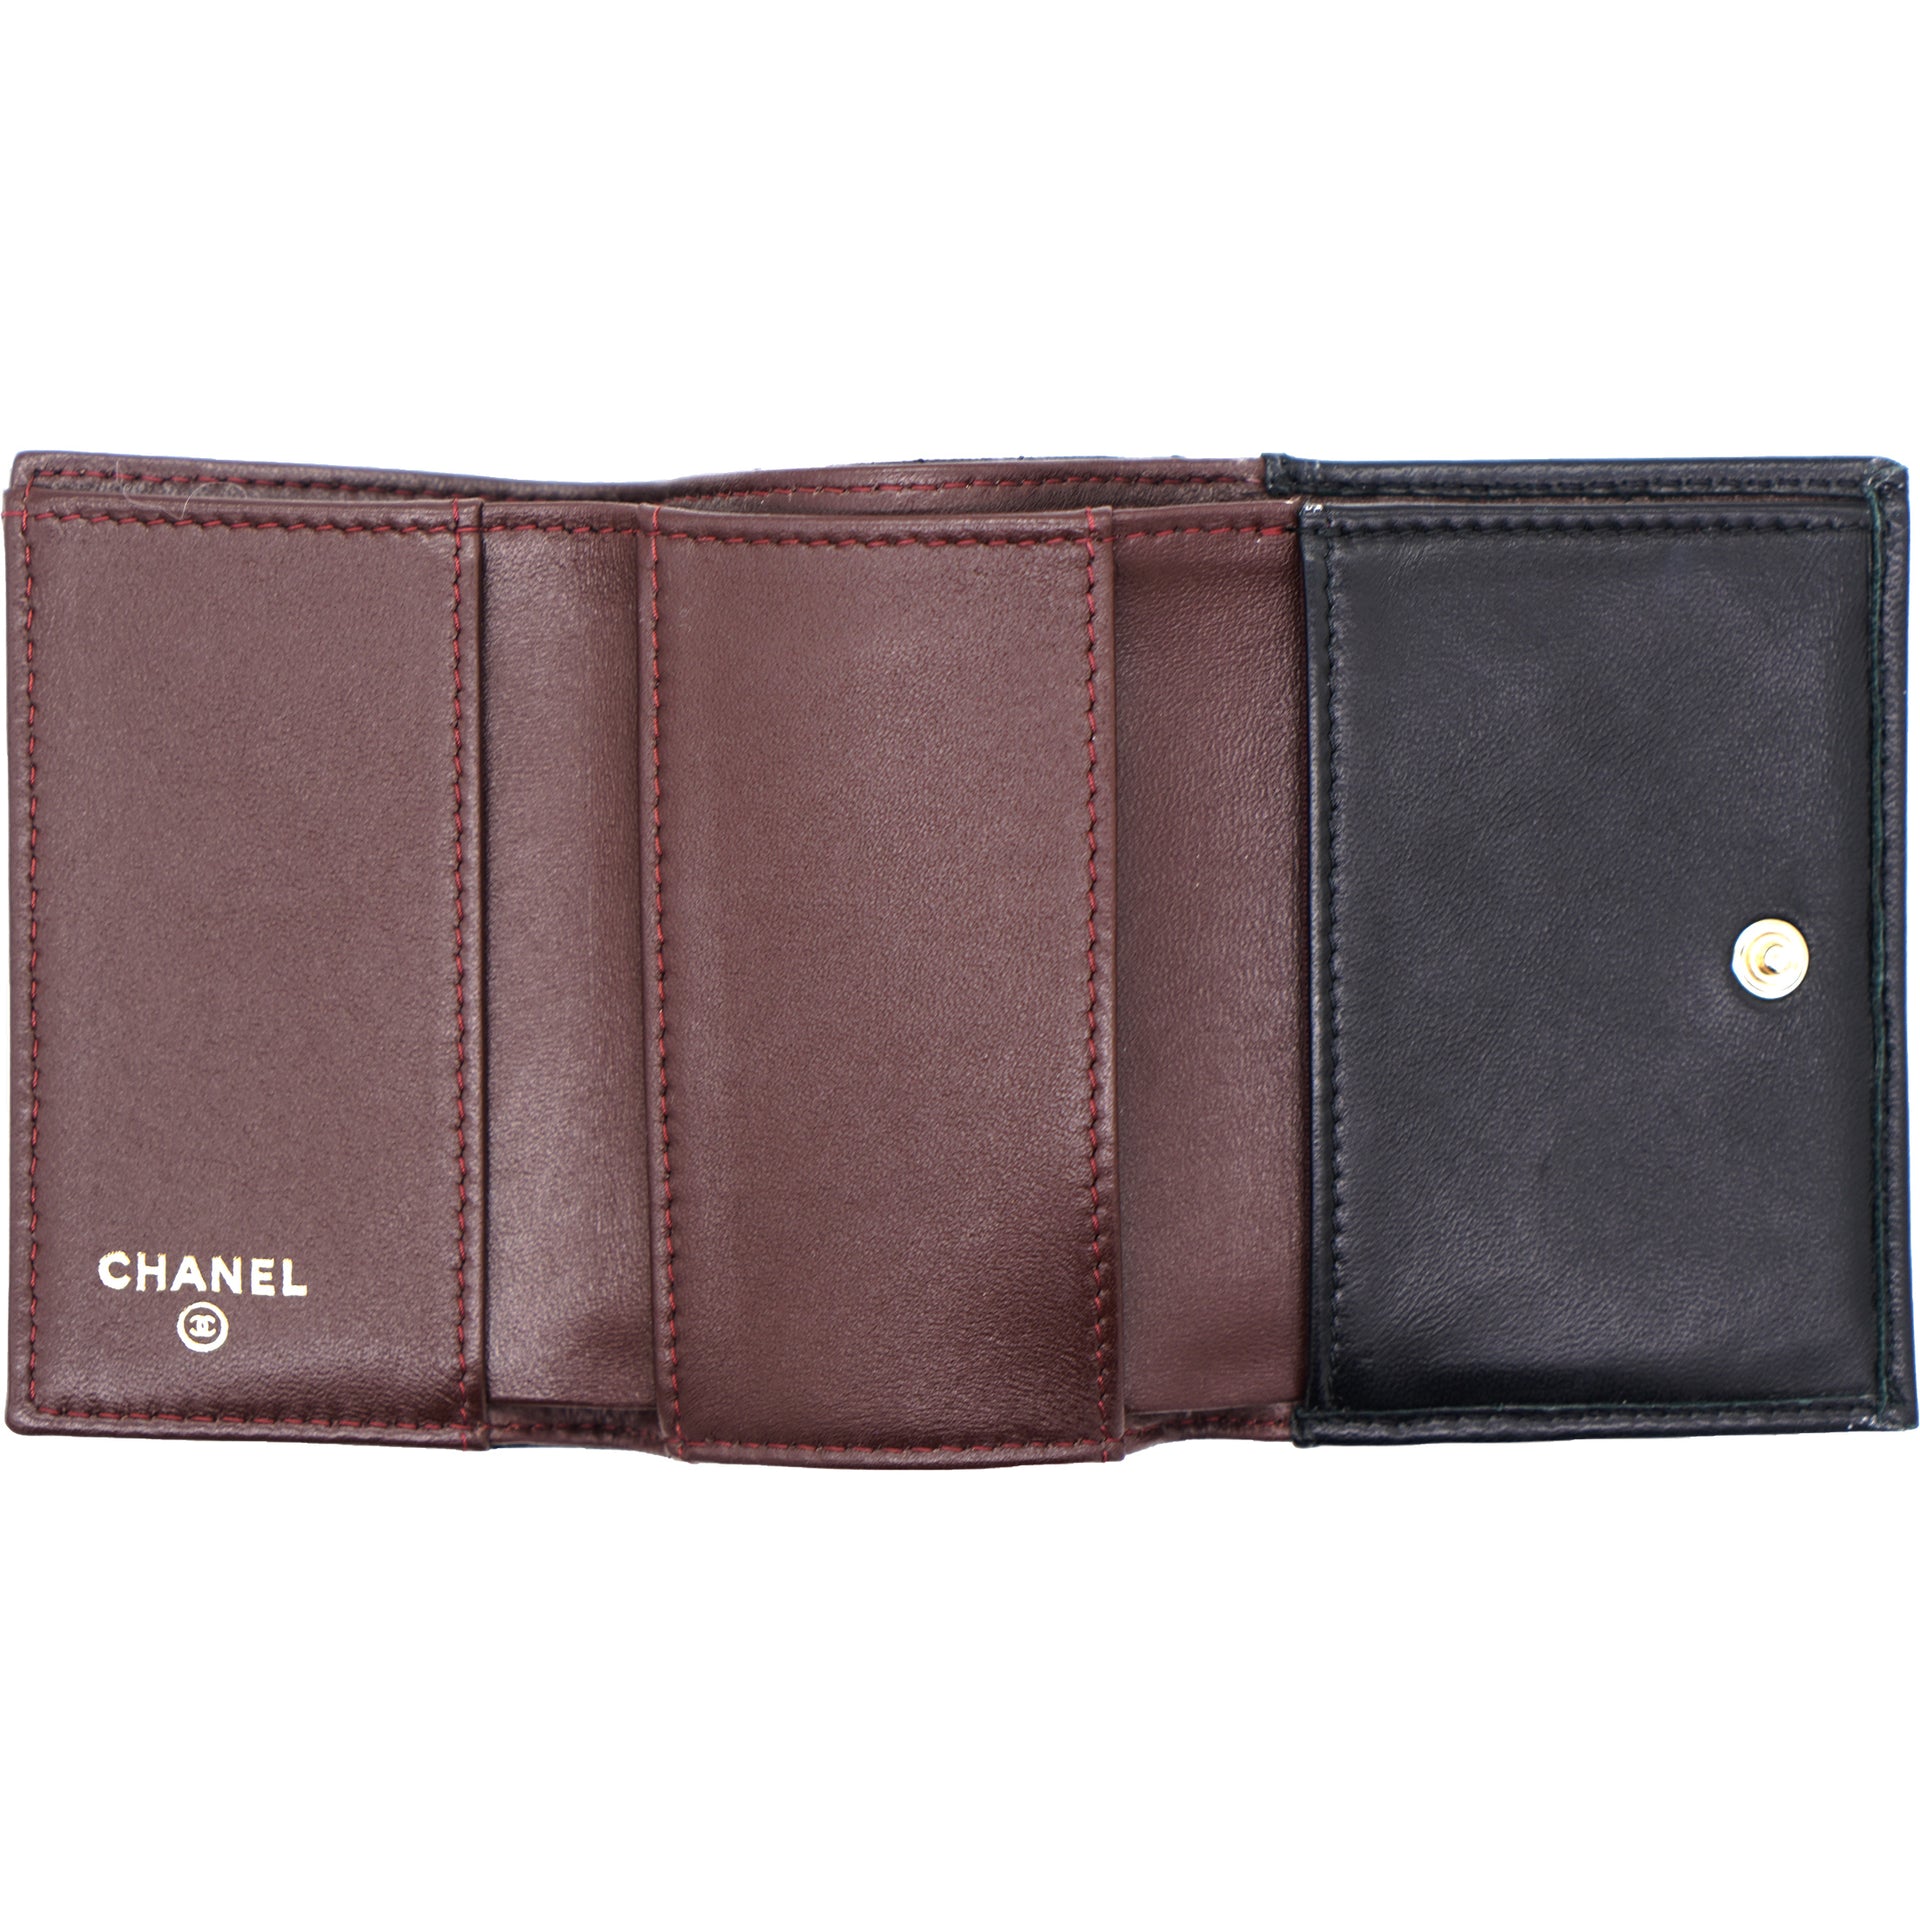 Chanel classic flap matelasse - Gem